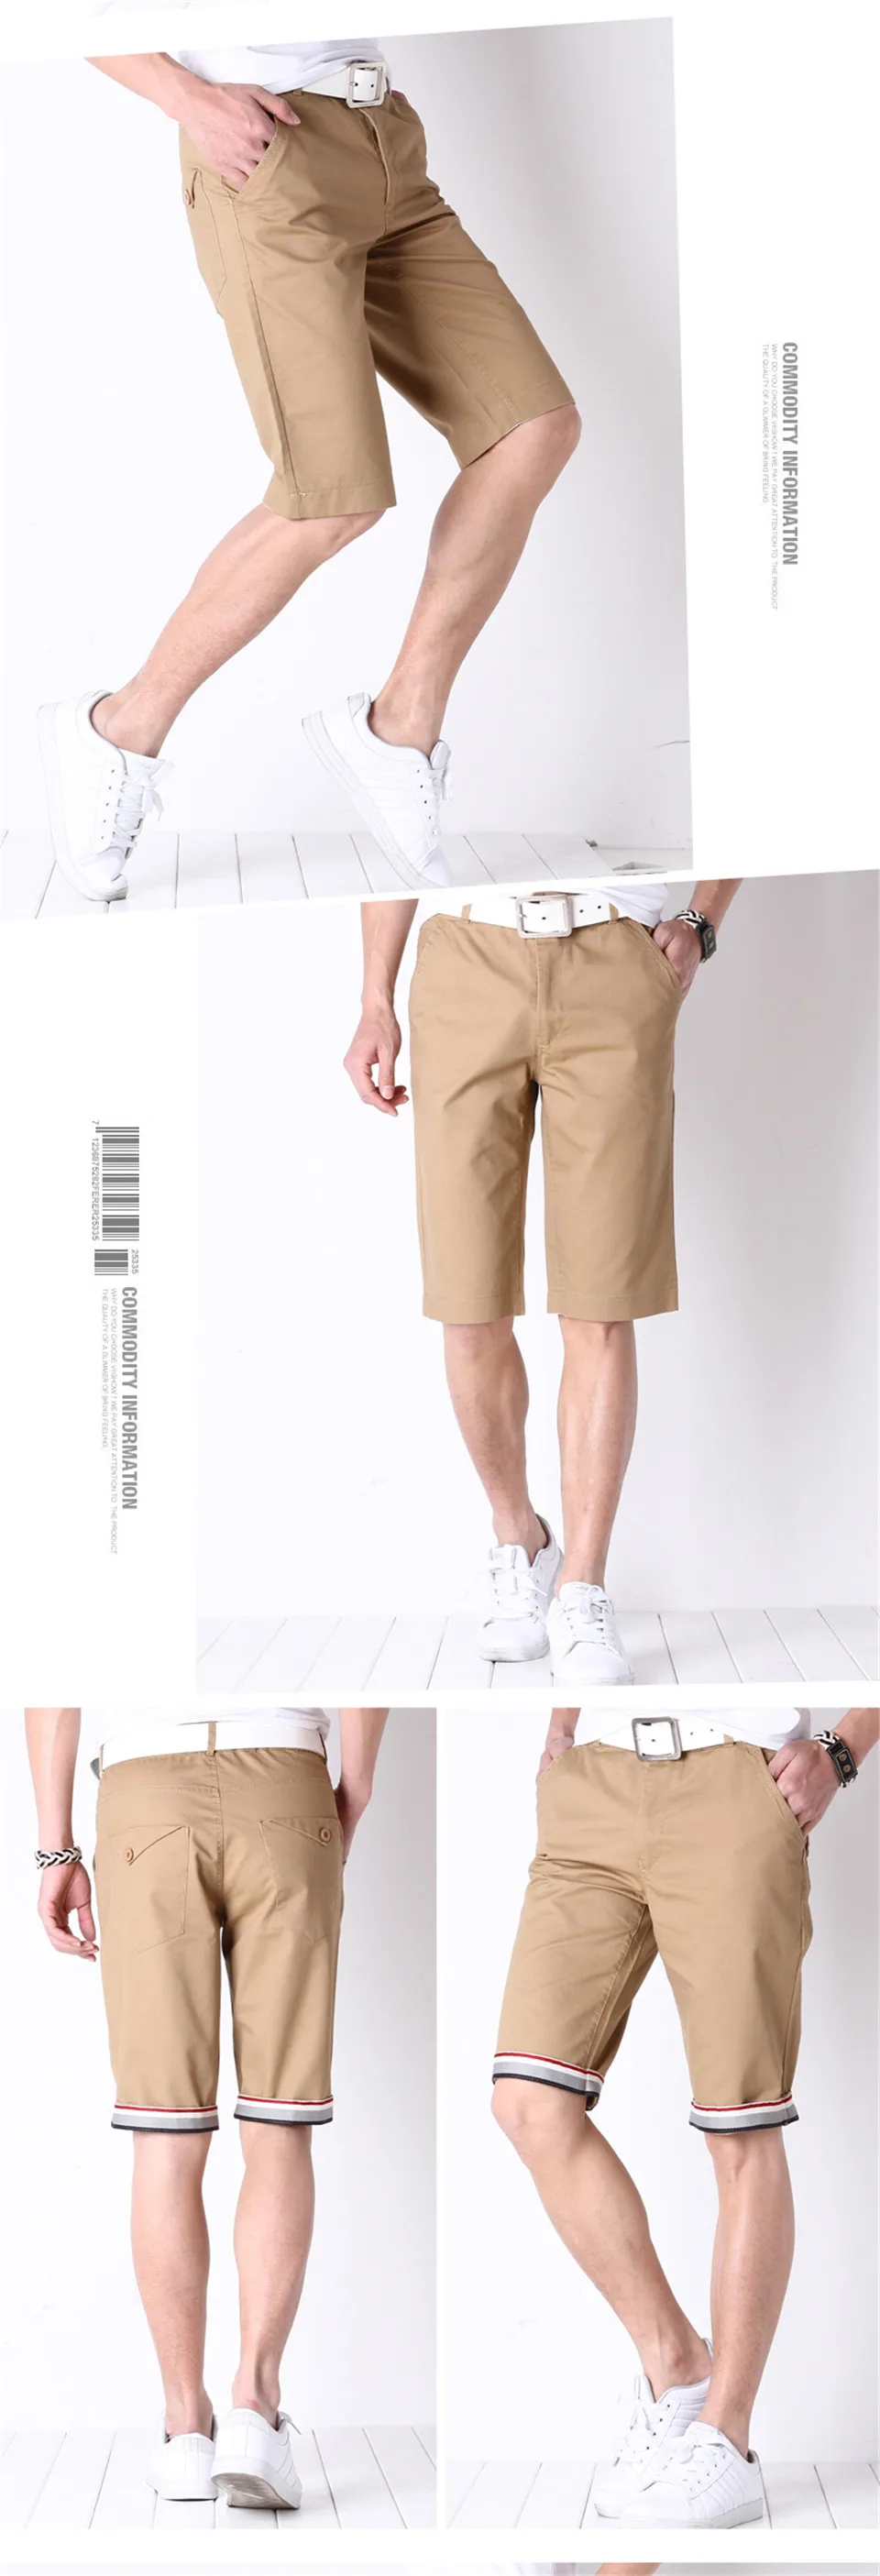 FGKKS Мужские шорты новые летние модные повседневные хлопковые тонкие бермуды Masculina пляжные шорты для бега мужские брюки шорты